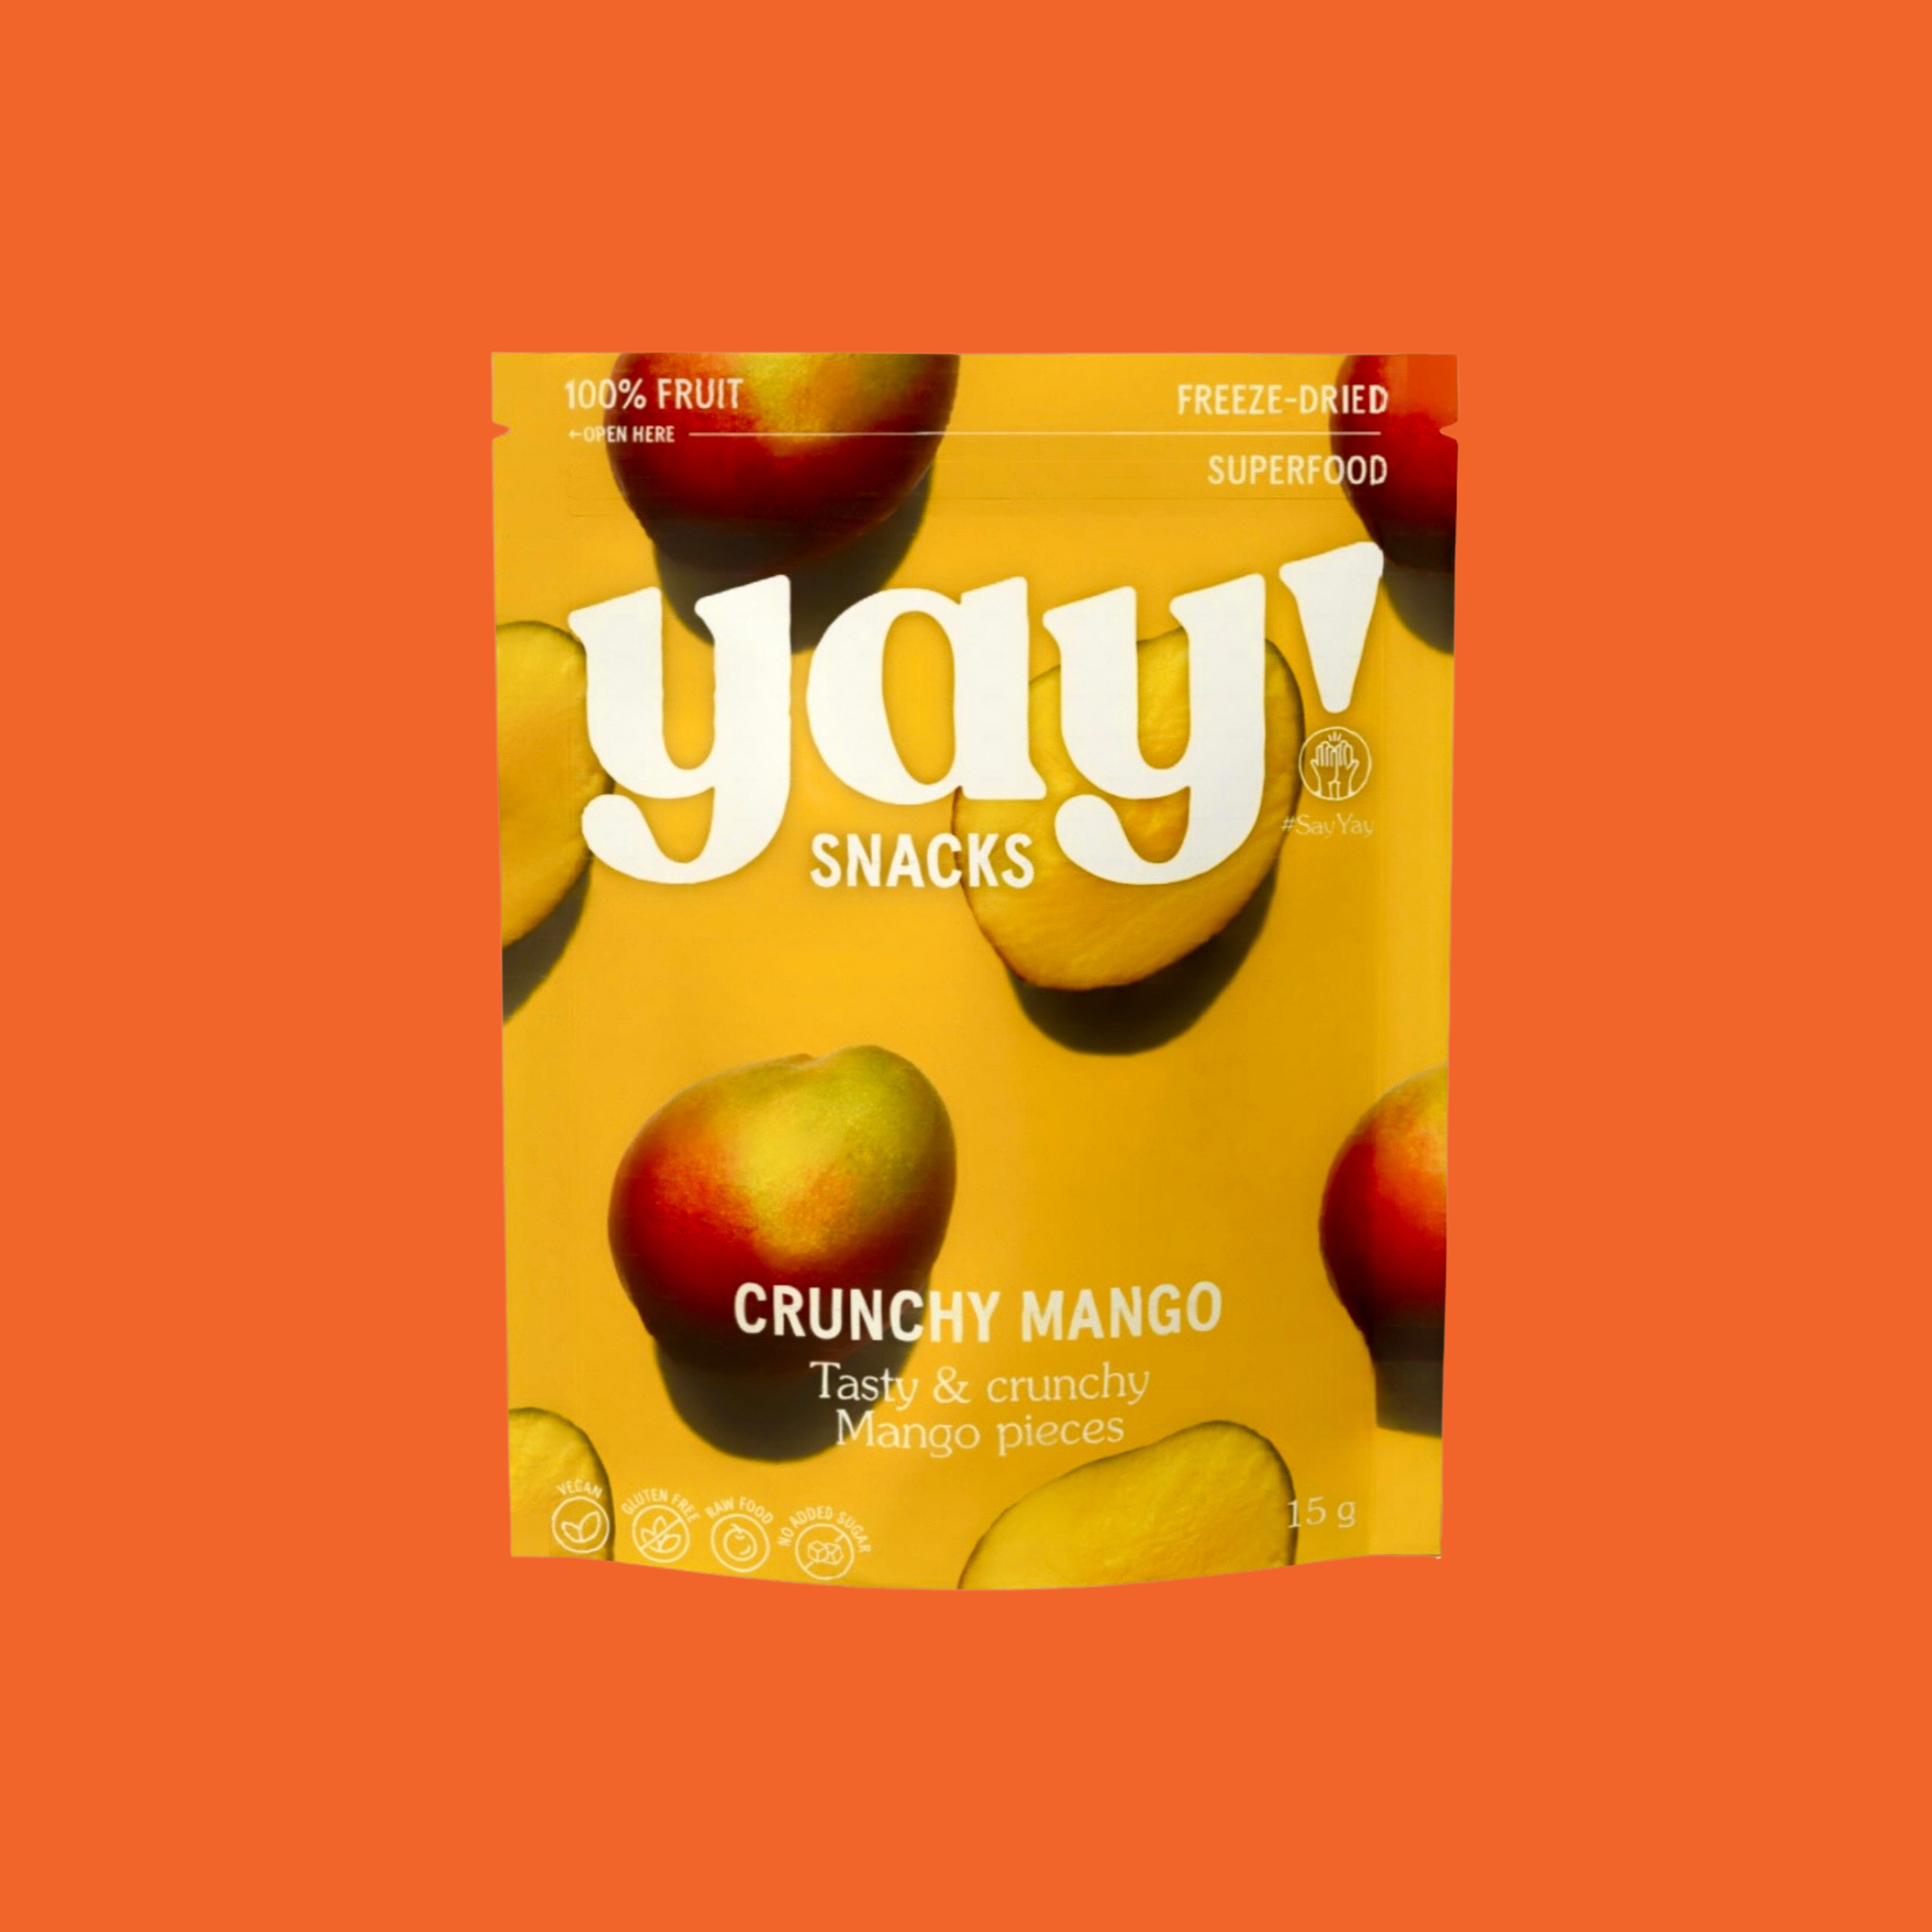 Crunchy Mango